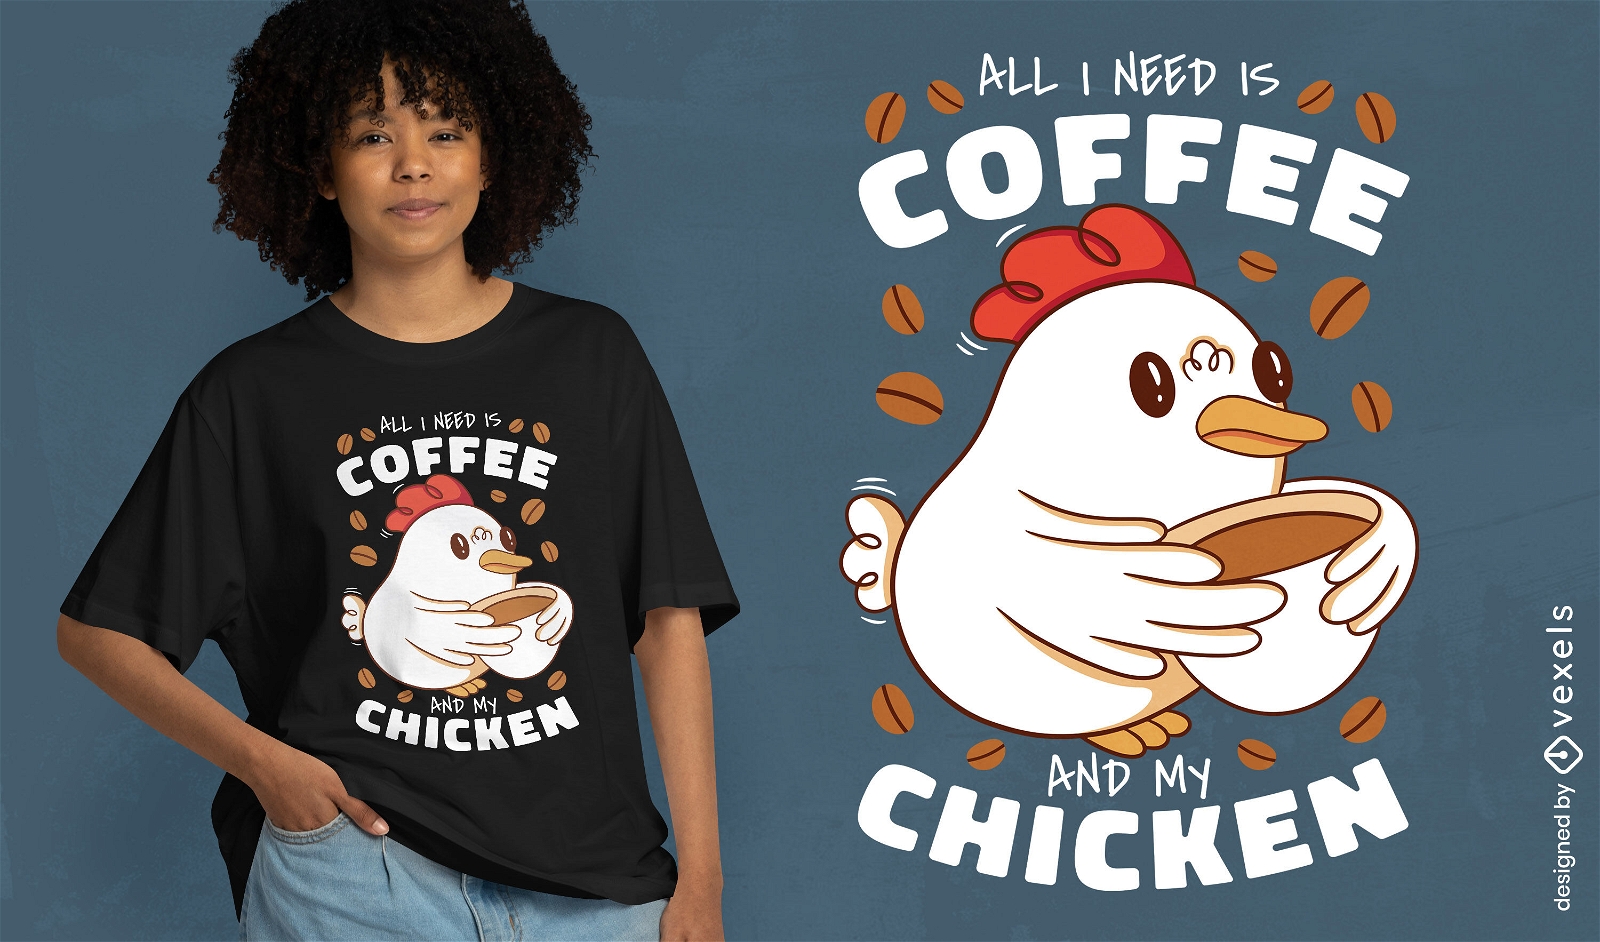 Dise?o de camiseta amante del caf? y el pollo.